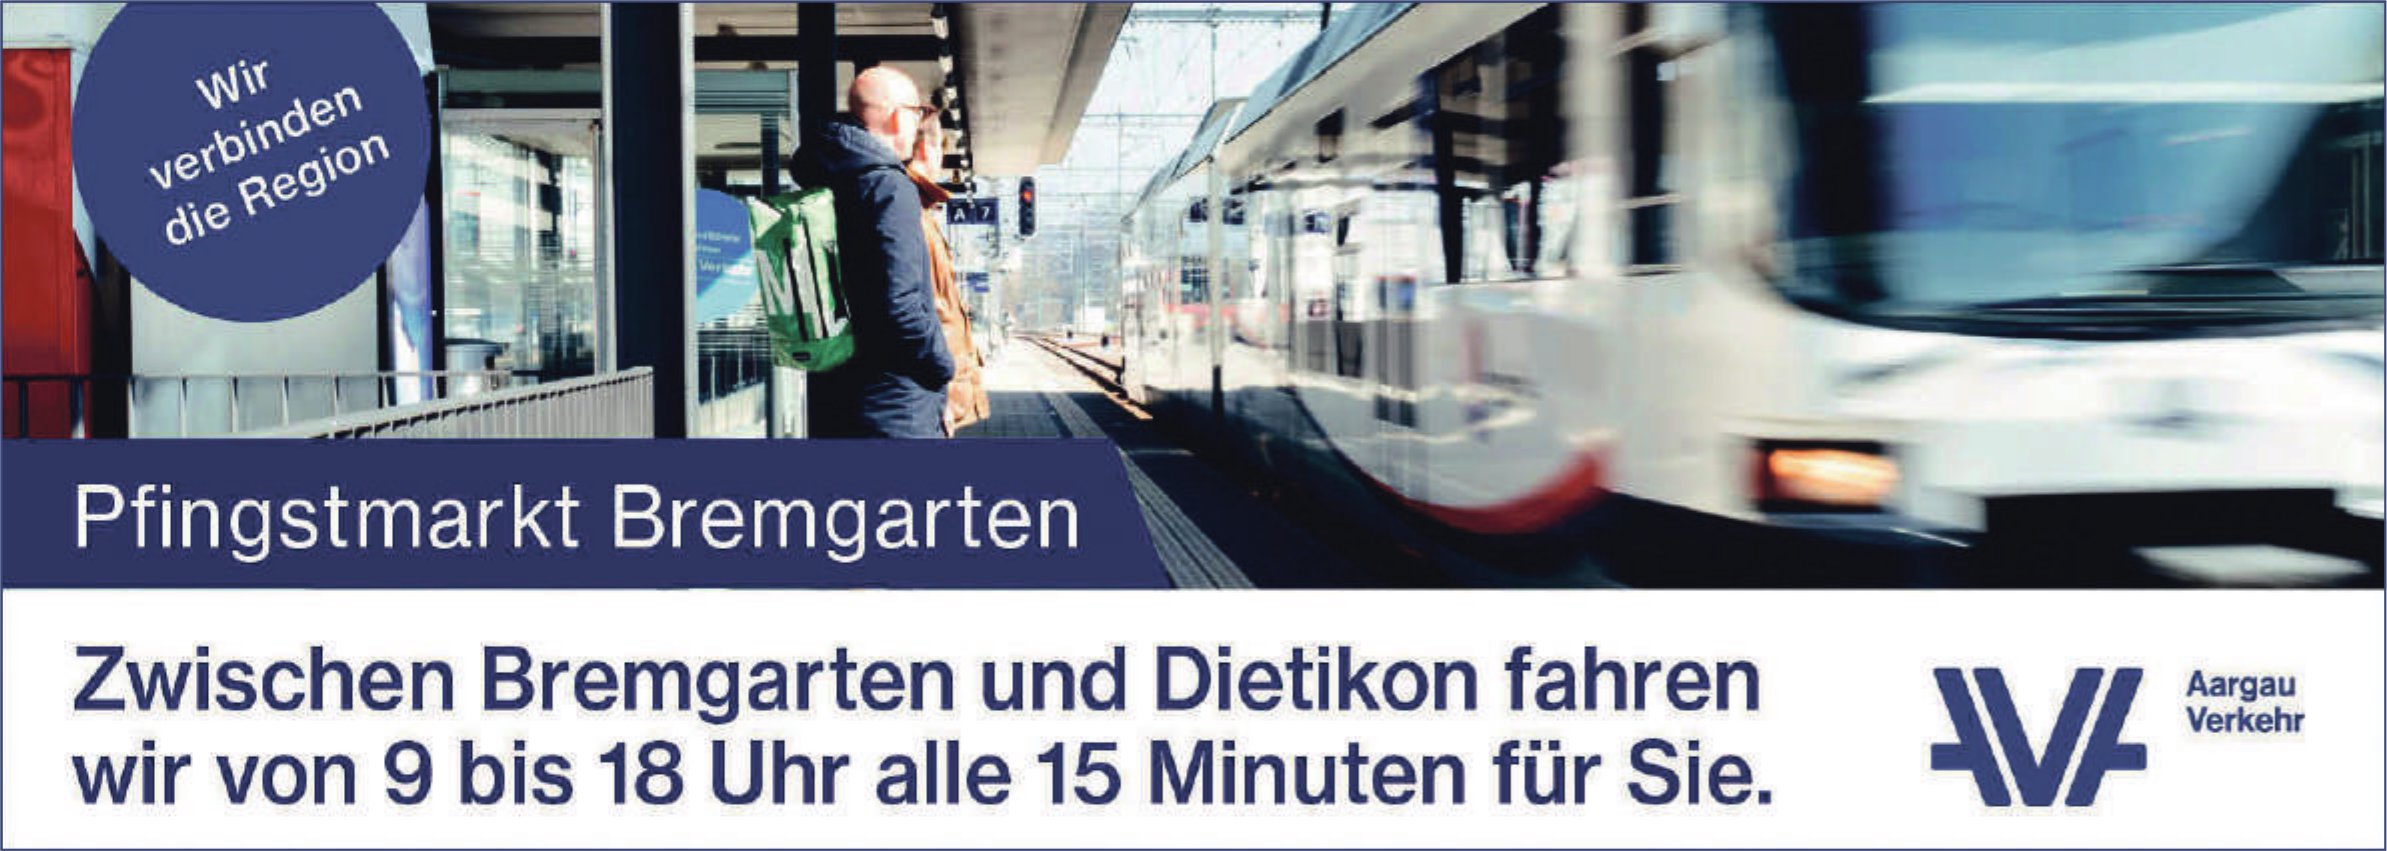 Aargau Verkehr, Pfingstmarkt, Alle 15 MInuten ein Zug zwischen Bremgarten und Dietikon